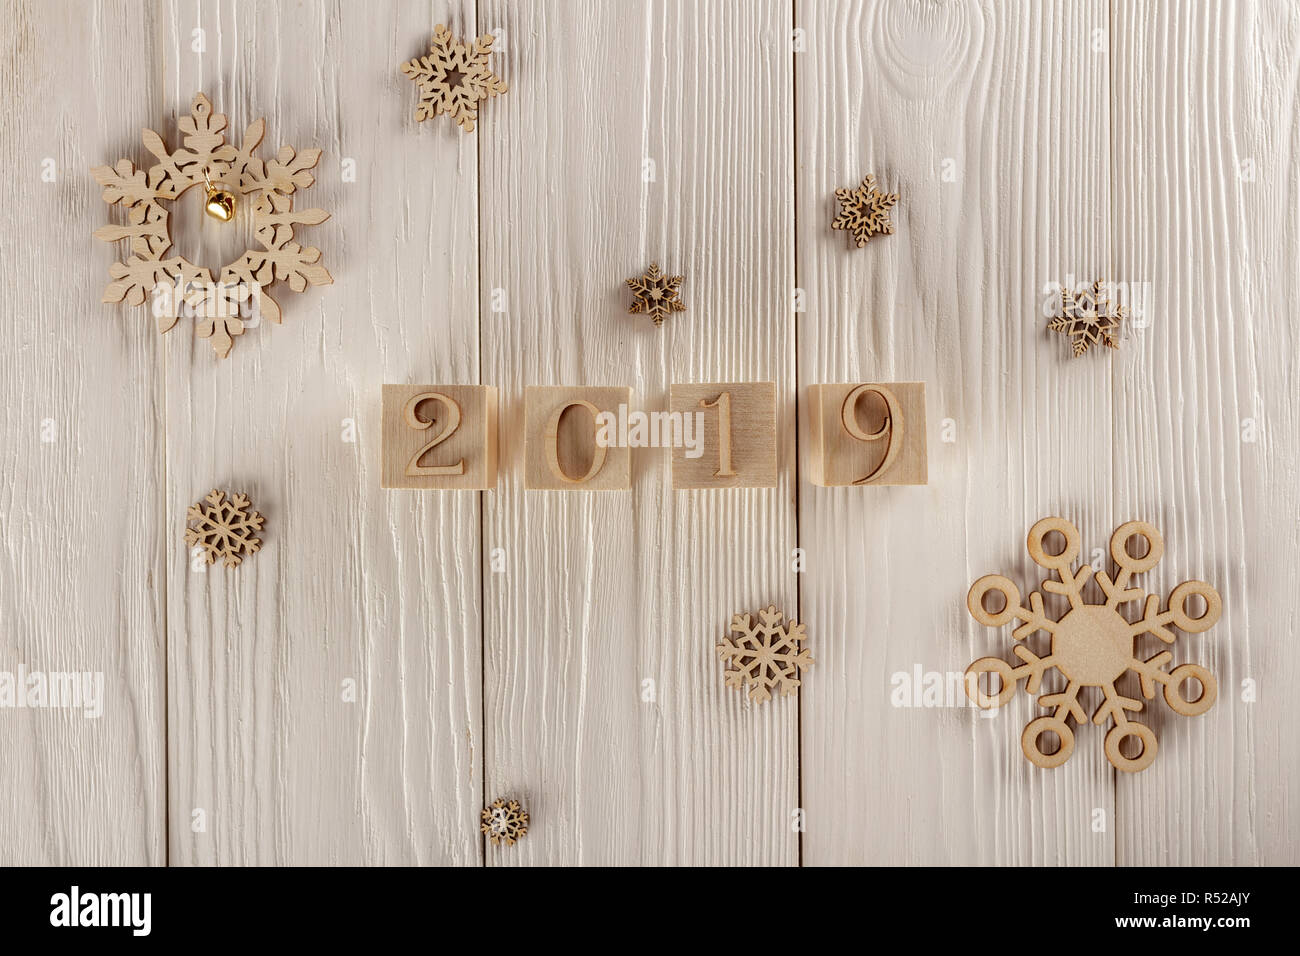 Carte de Noël, des cubes en bois sur un fond de bois. Accueil design confortable. Bonne année 2019. Banque D'Images